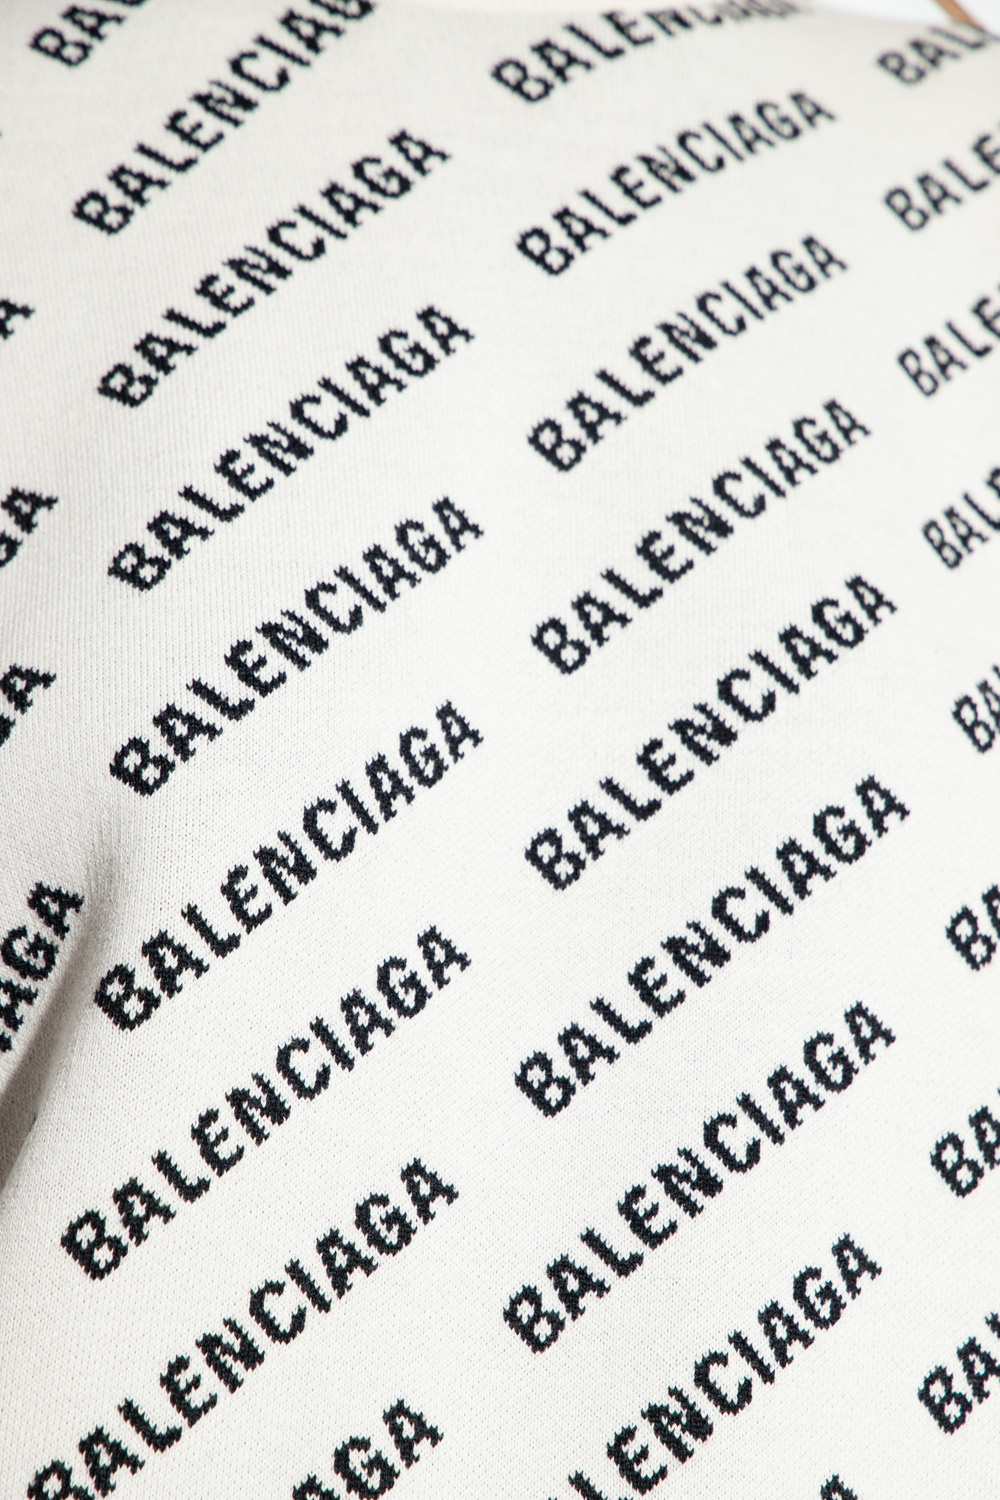 Balenciaga cotton and linen shirt dress